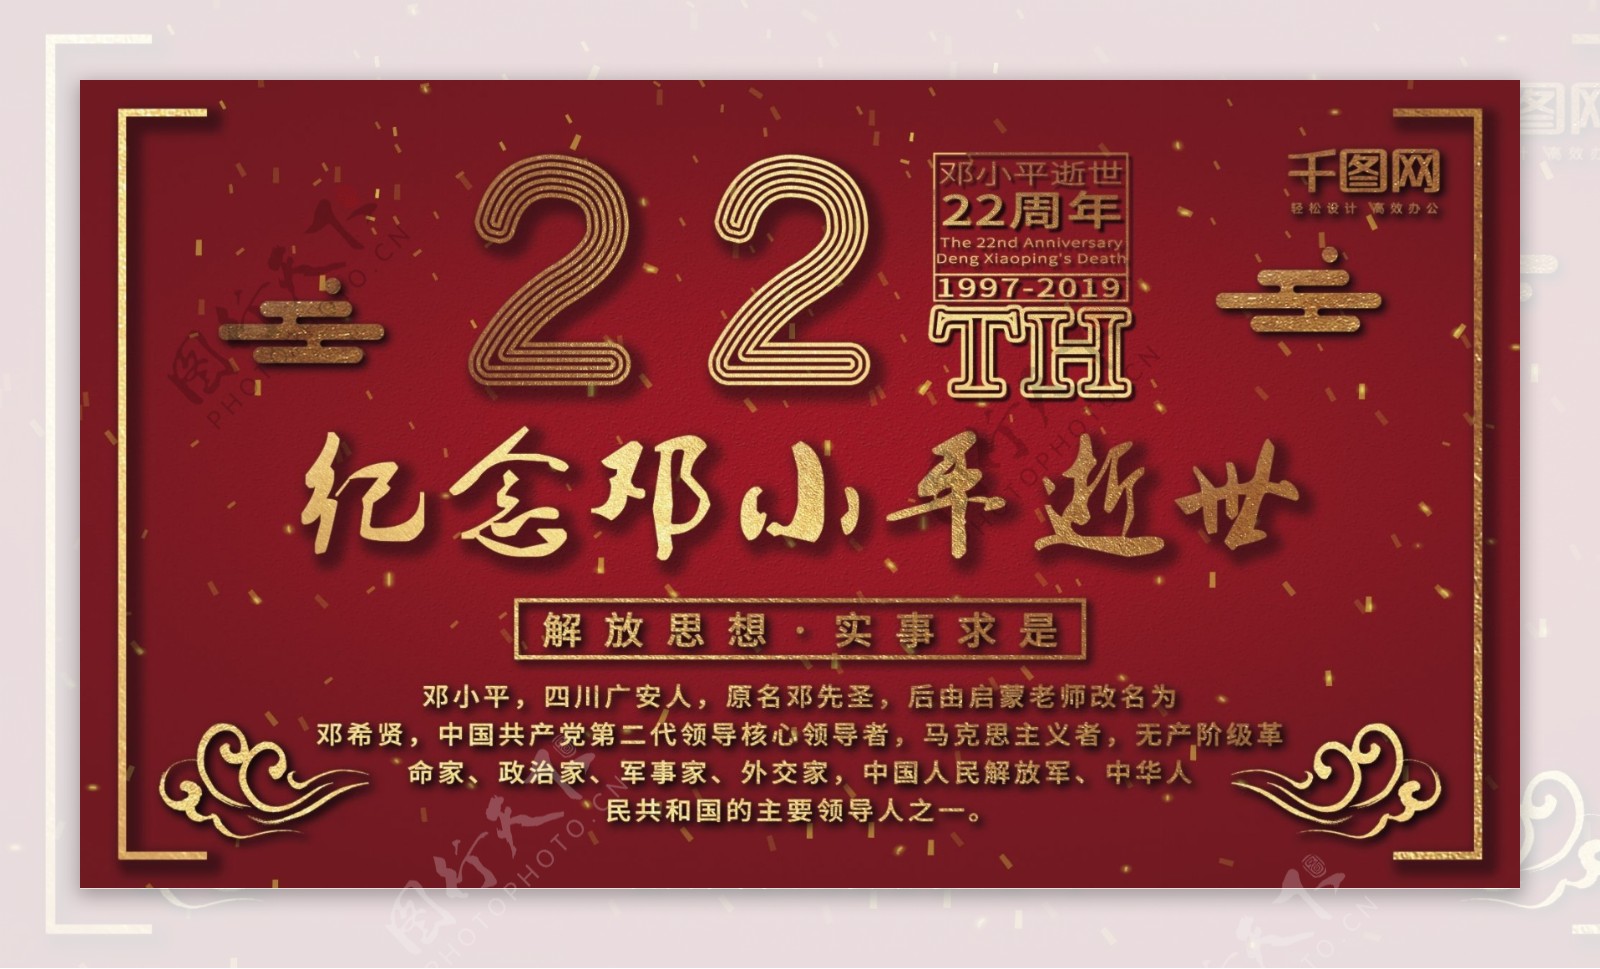 原创简约创意红纪念邓小平逝世22周年展板